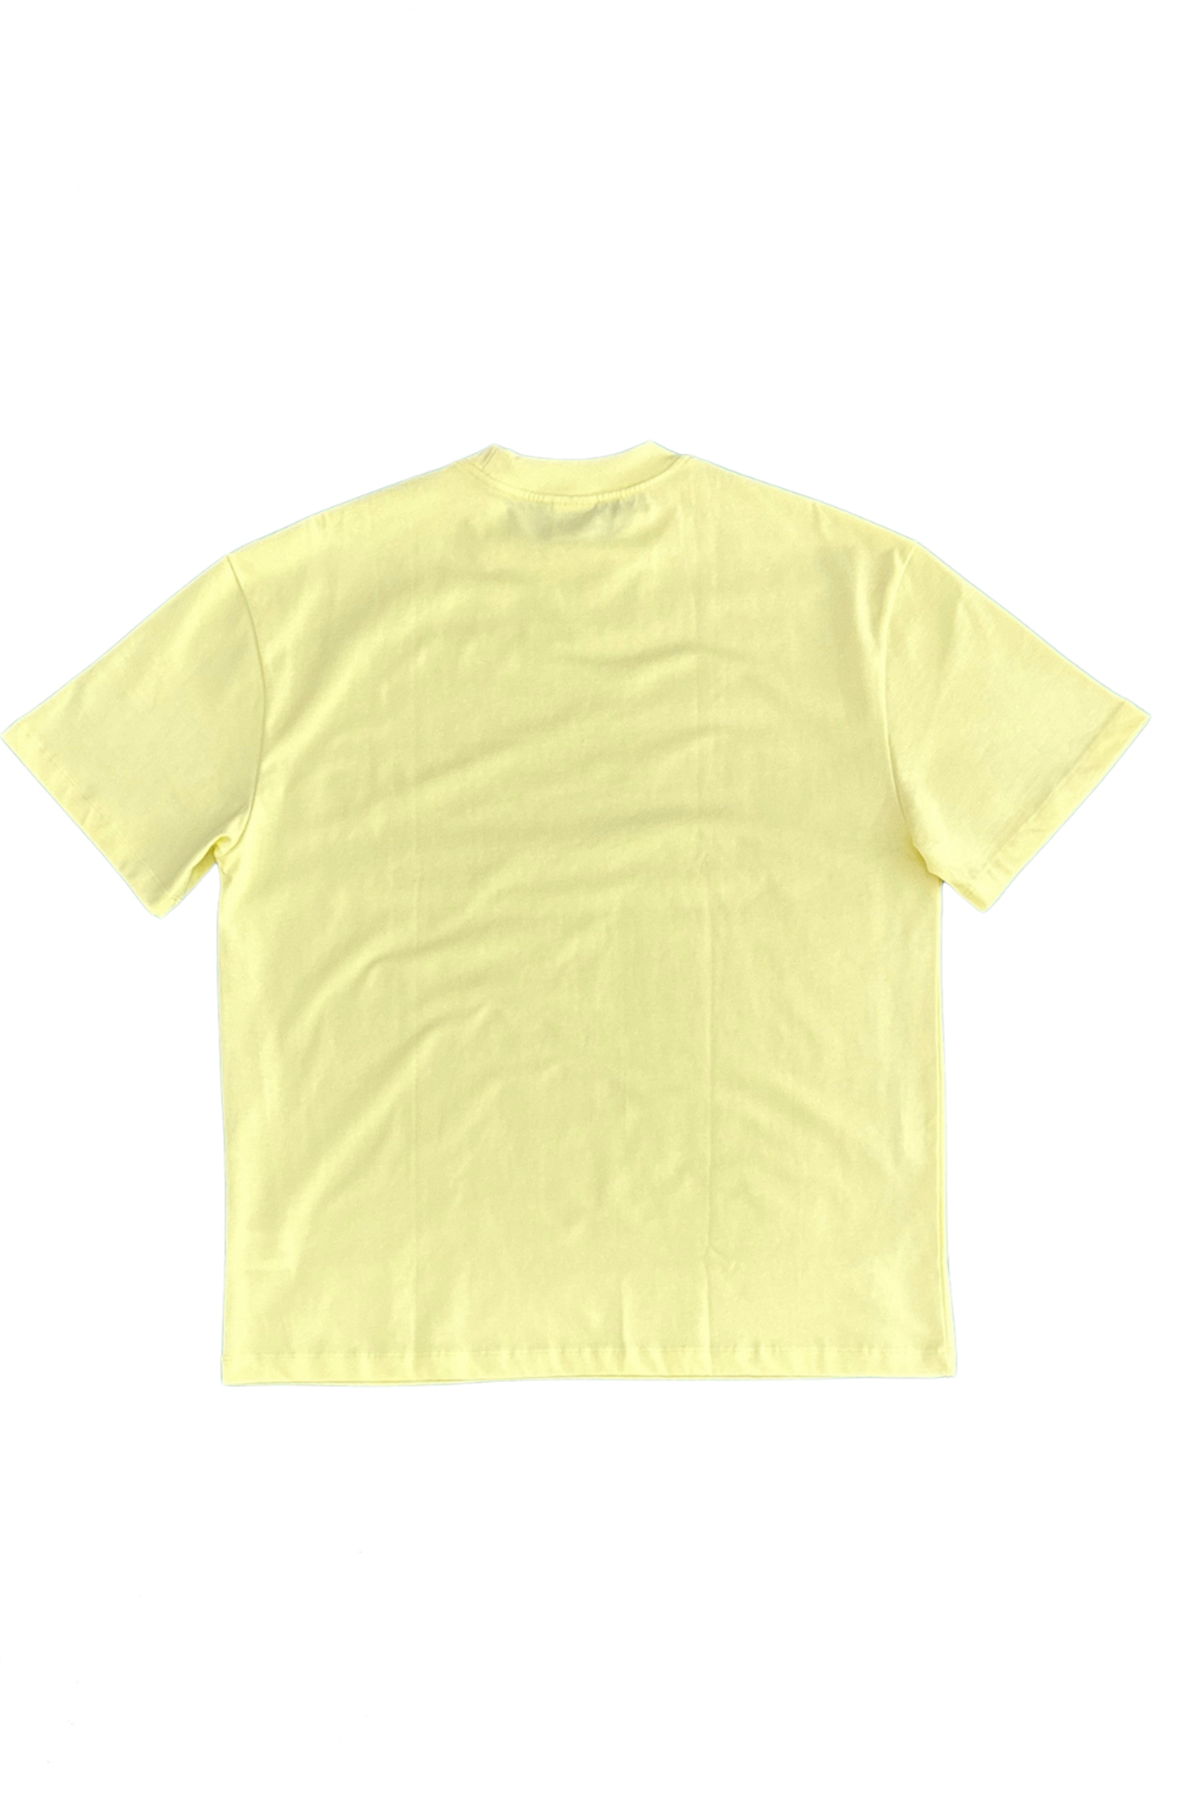 Oversized-Crew-Neck-T-shirt-Unisex-lime-back